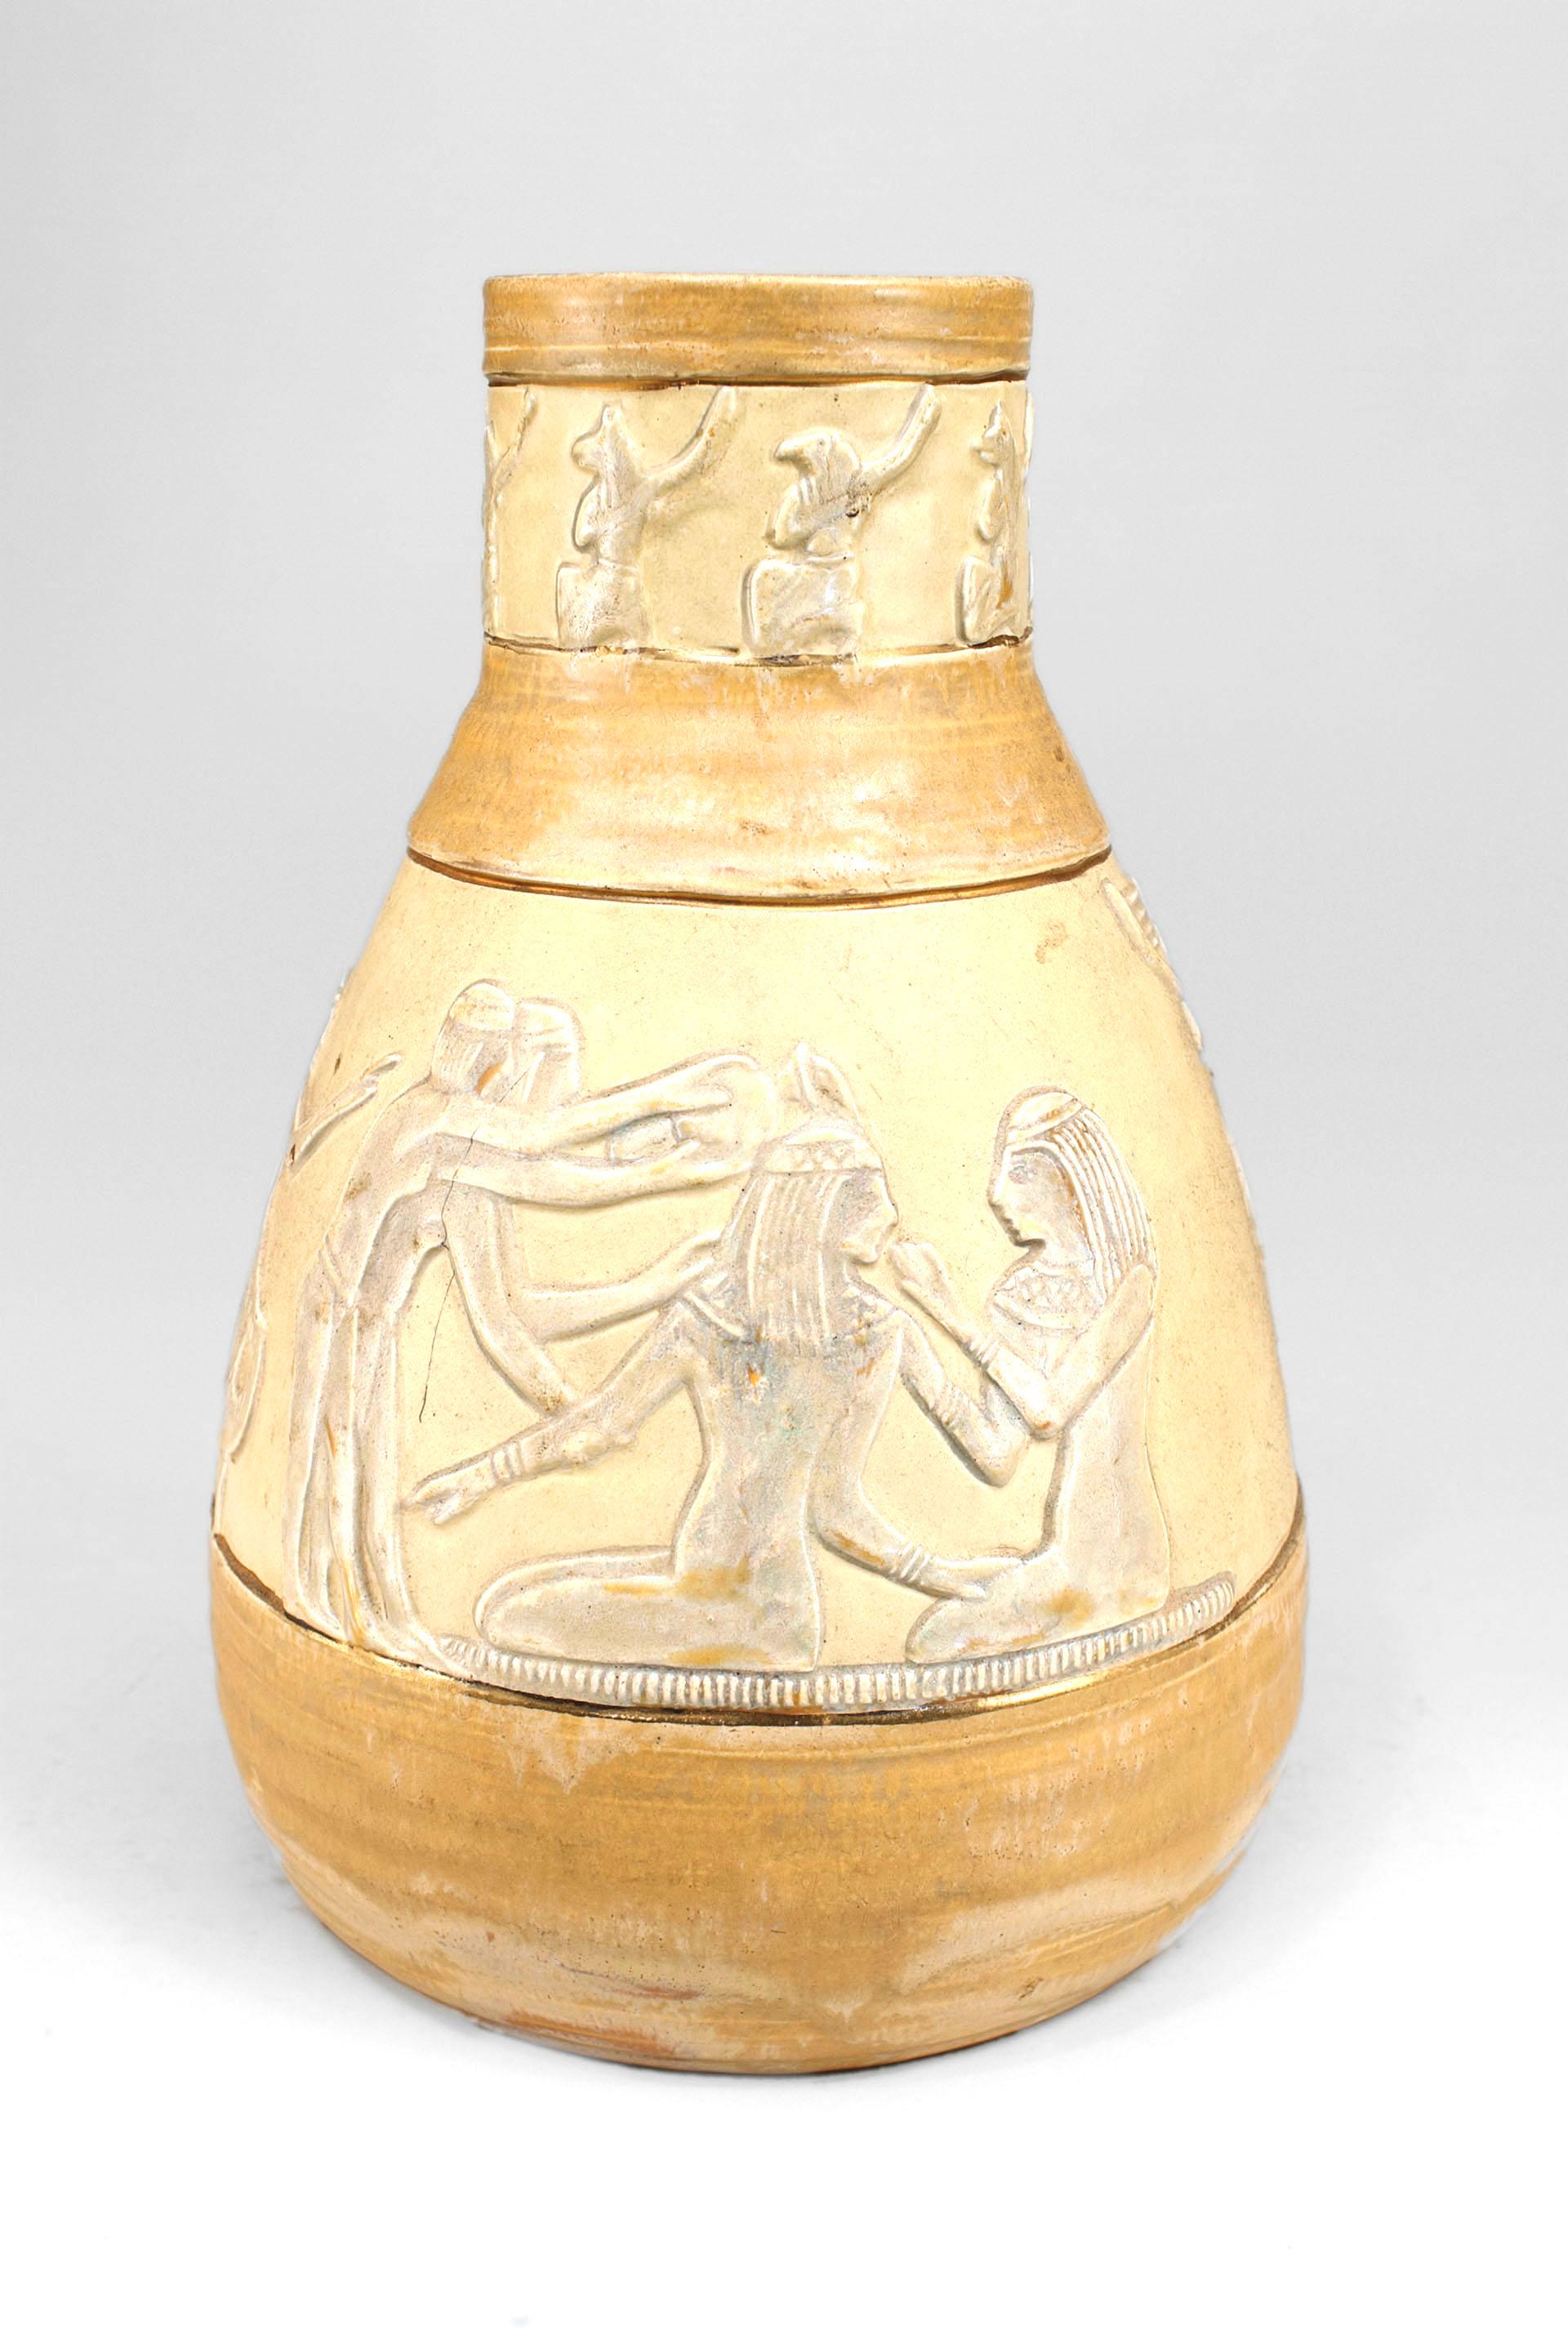 Vase Art Déco autrichien en porcelaine de couleur beige et crème avec des figures égyptiennes classiques émaillées autour du cou et du corps du vase. (att : JULES DRESSER).
   